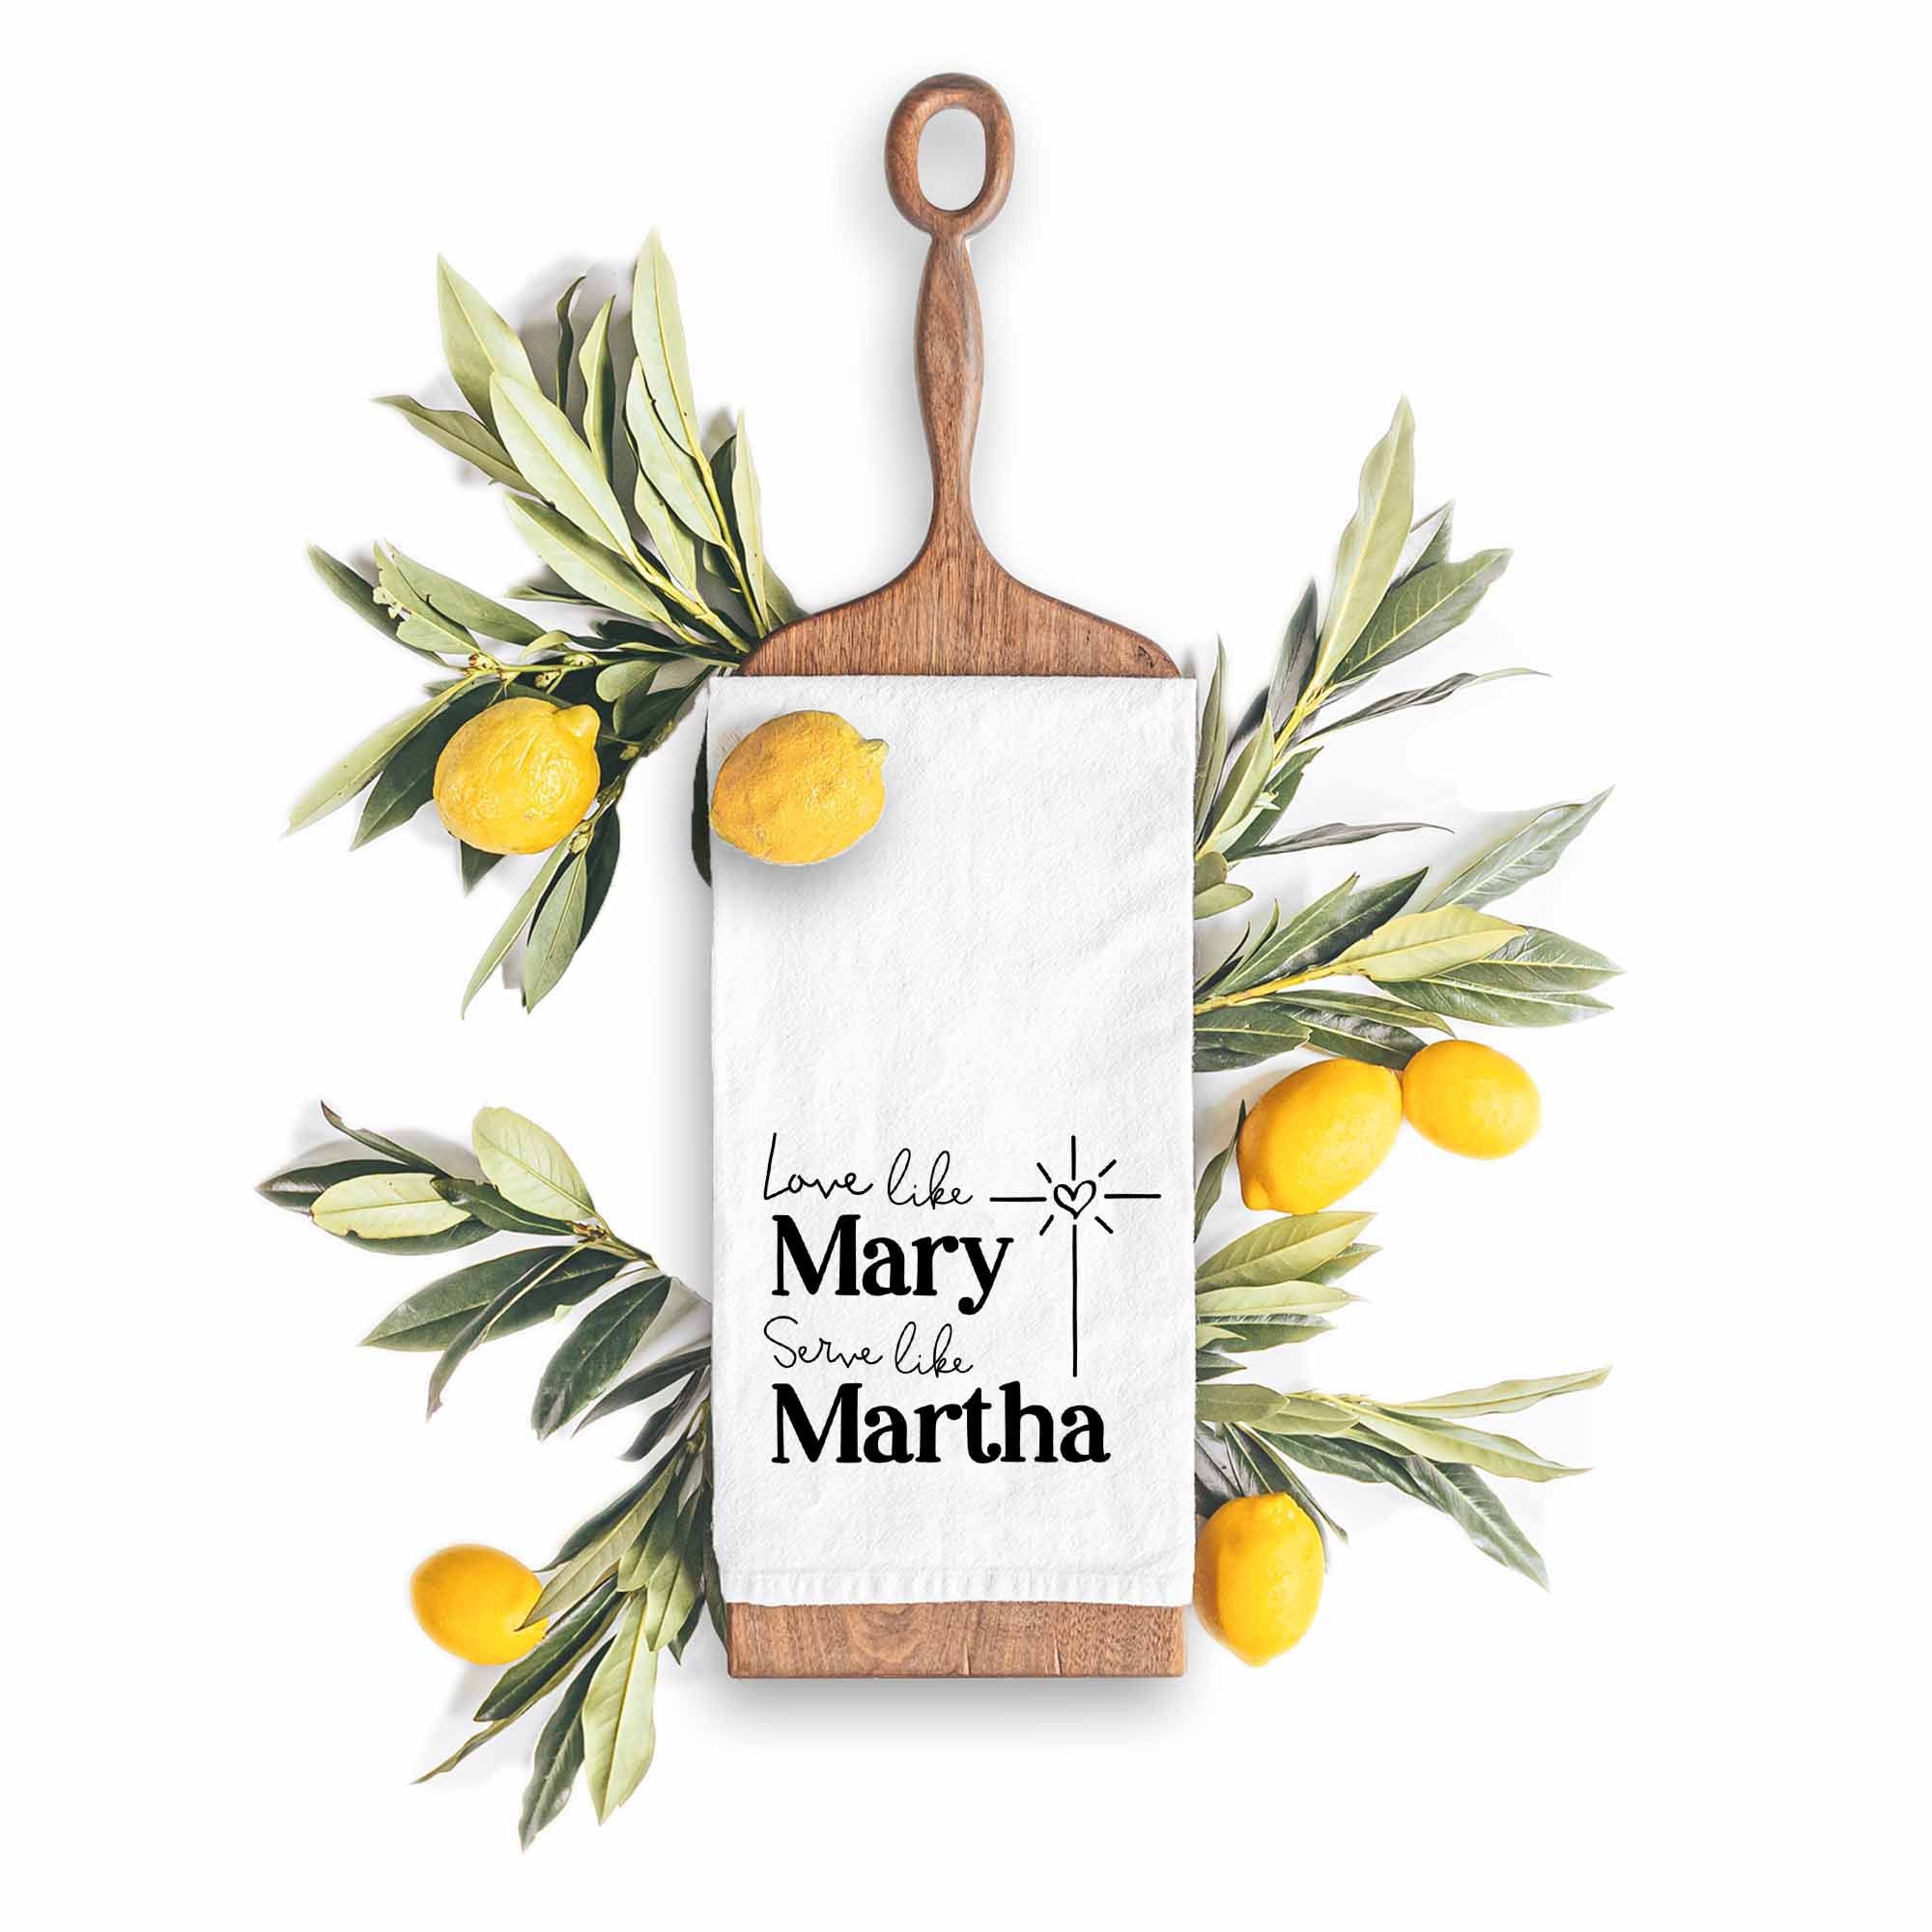 Love Like Mary, Serve Like Martha Christian Kitchen Towel